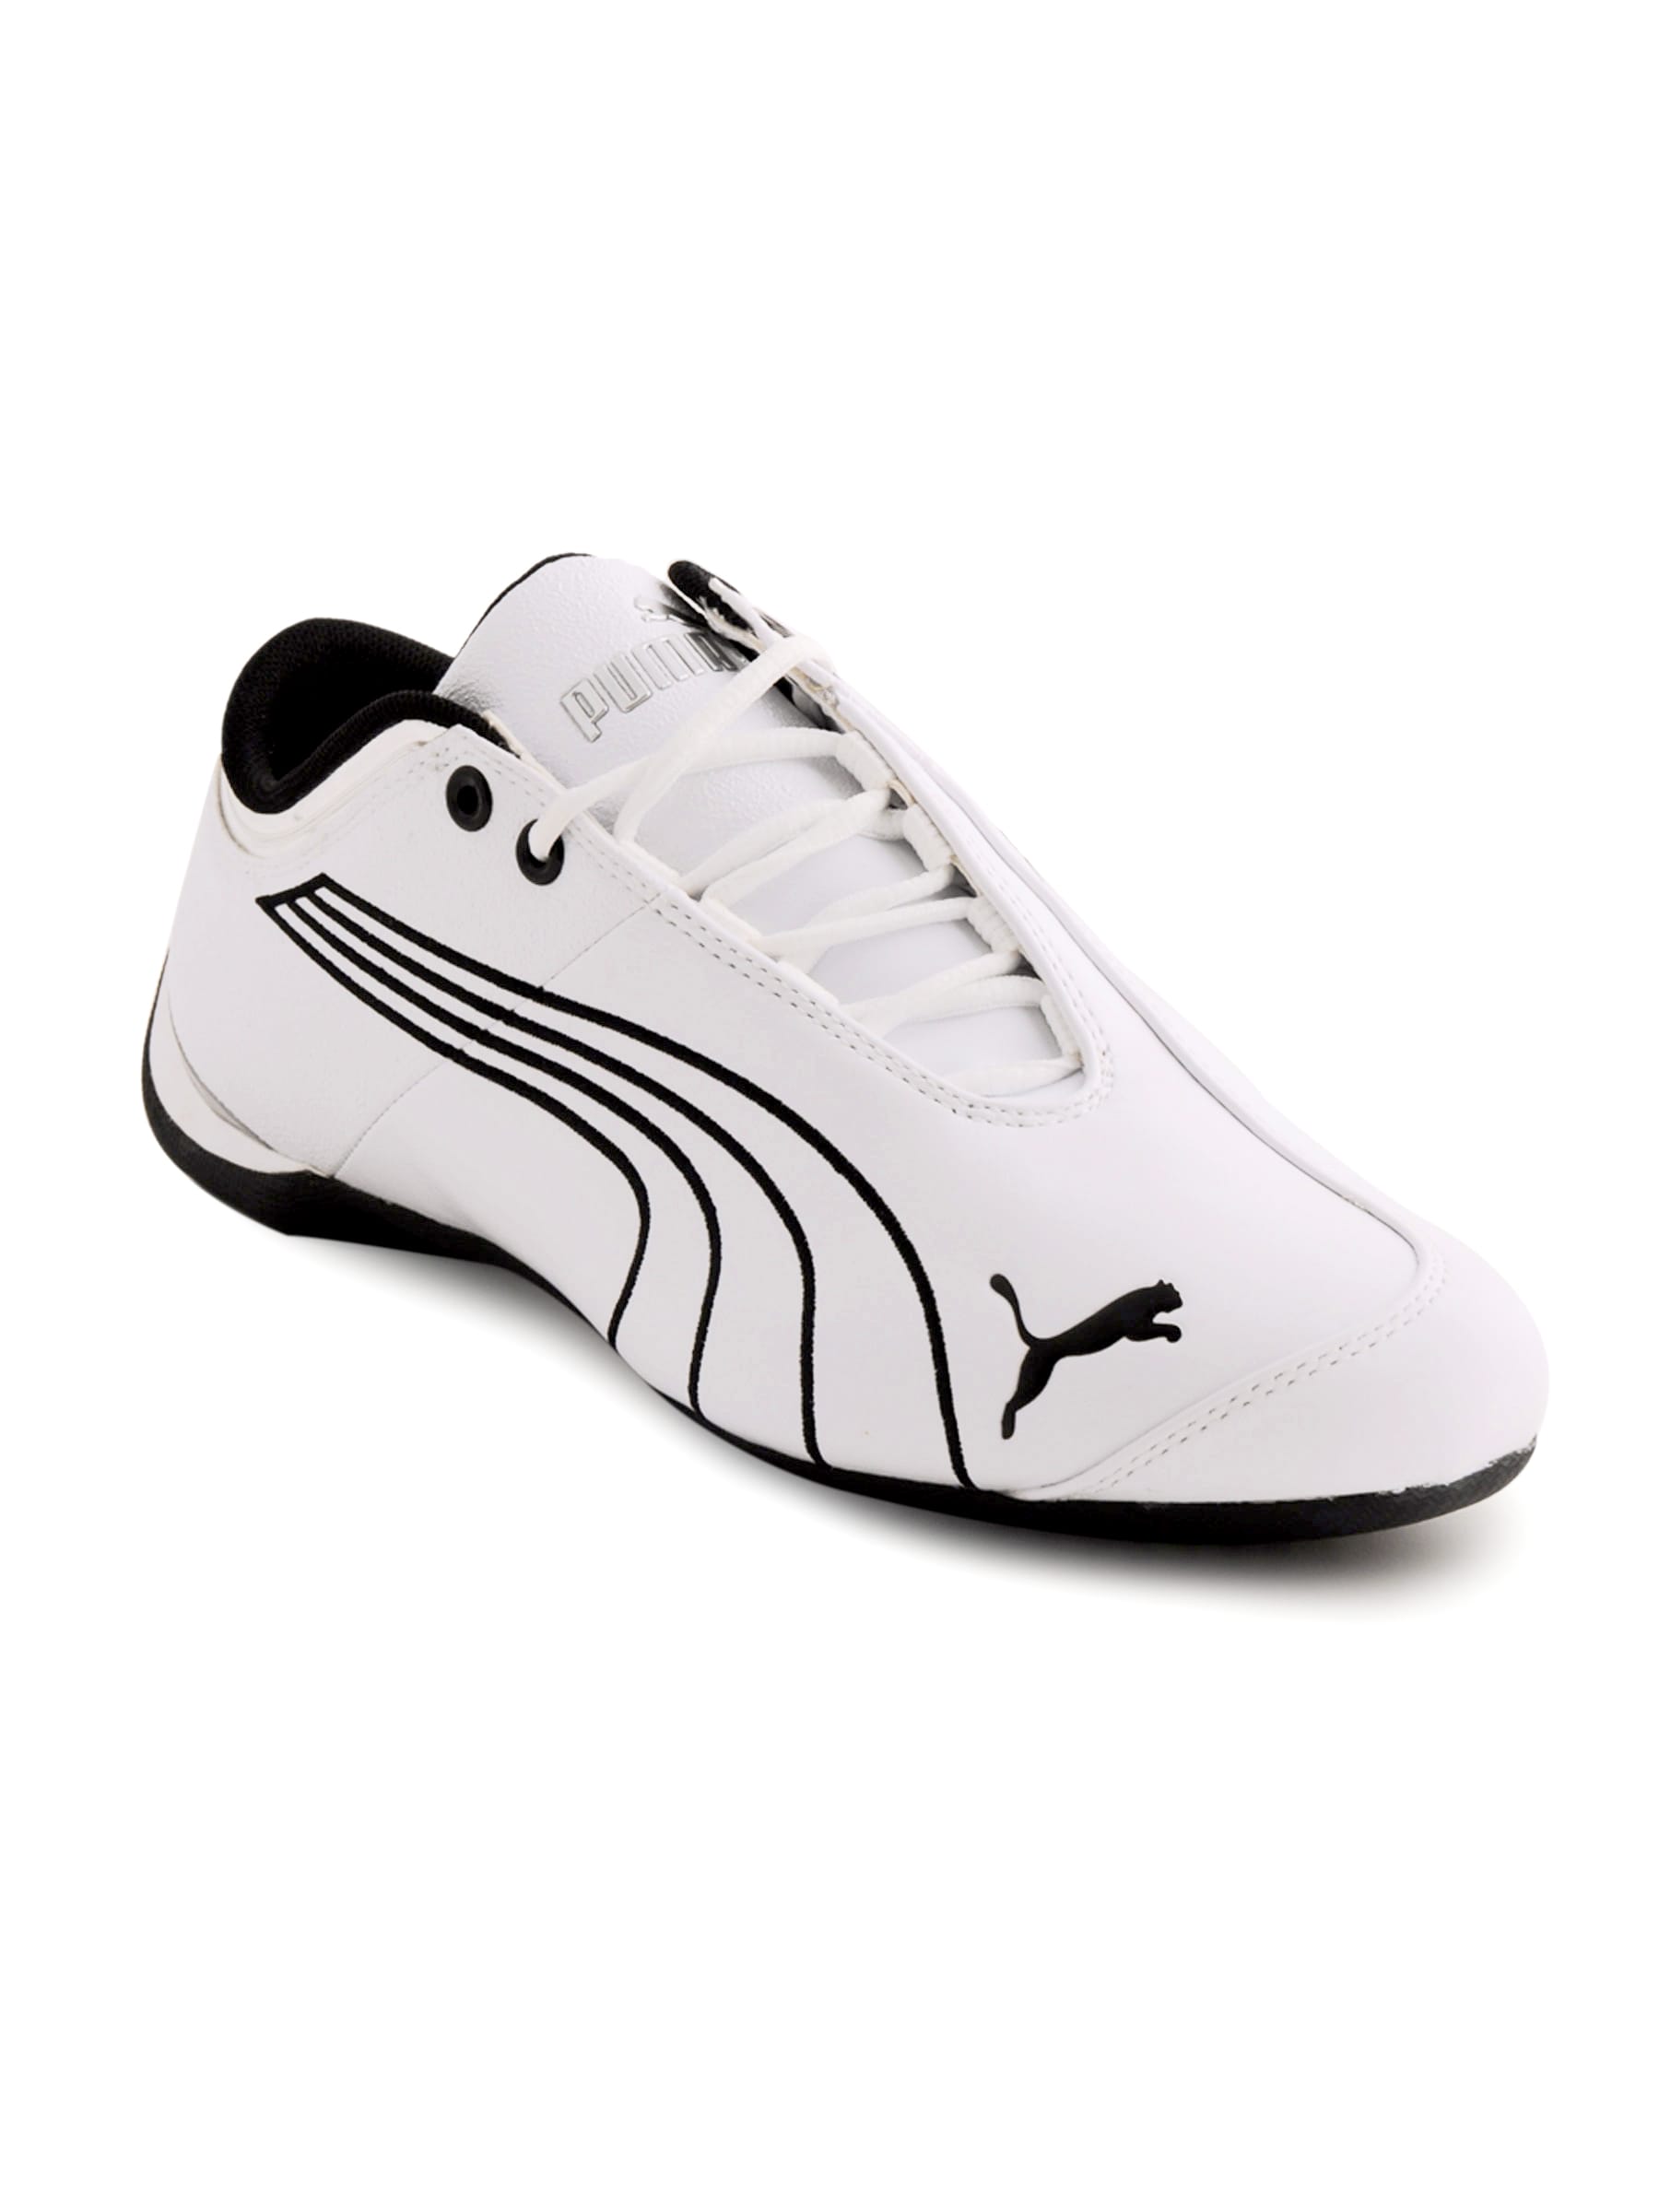 Puma Men Future Cat M1 White Casual Shoes